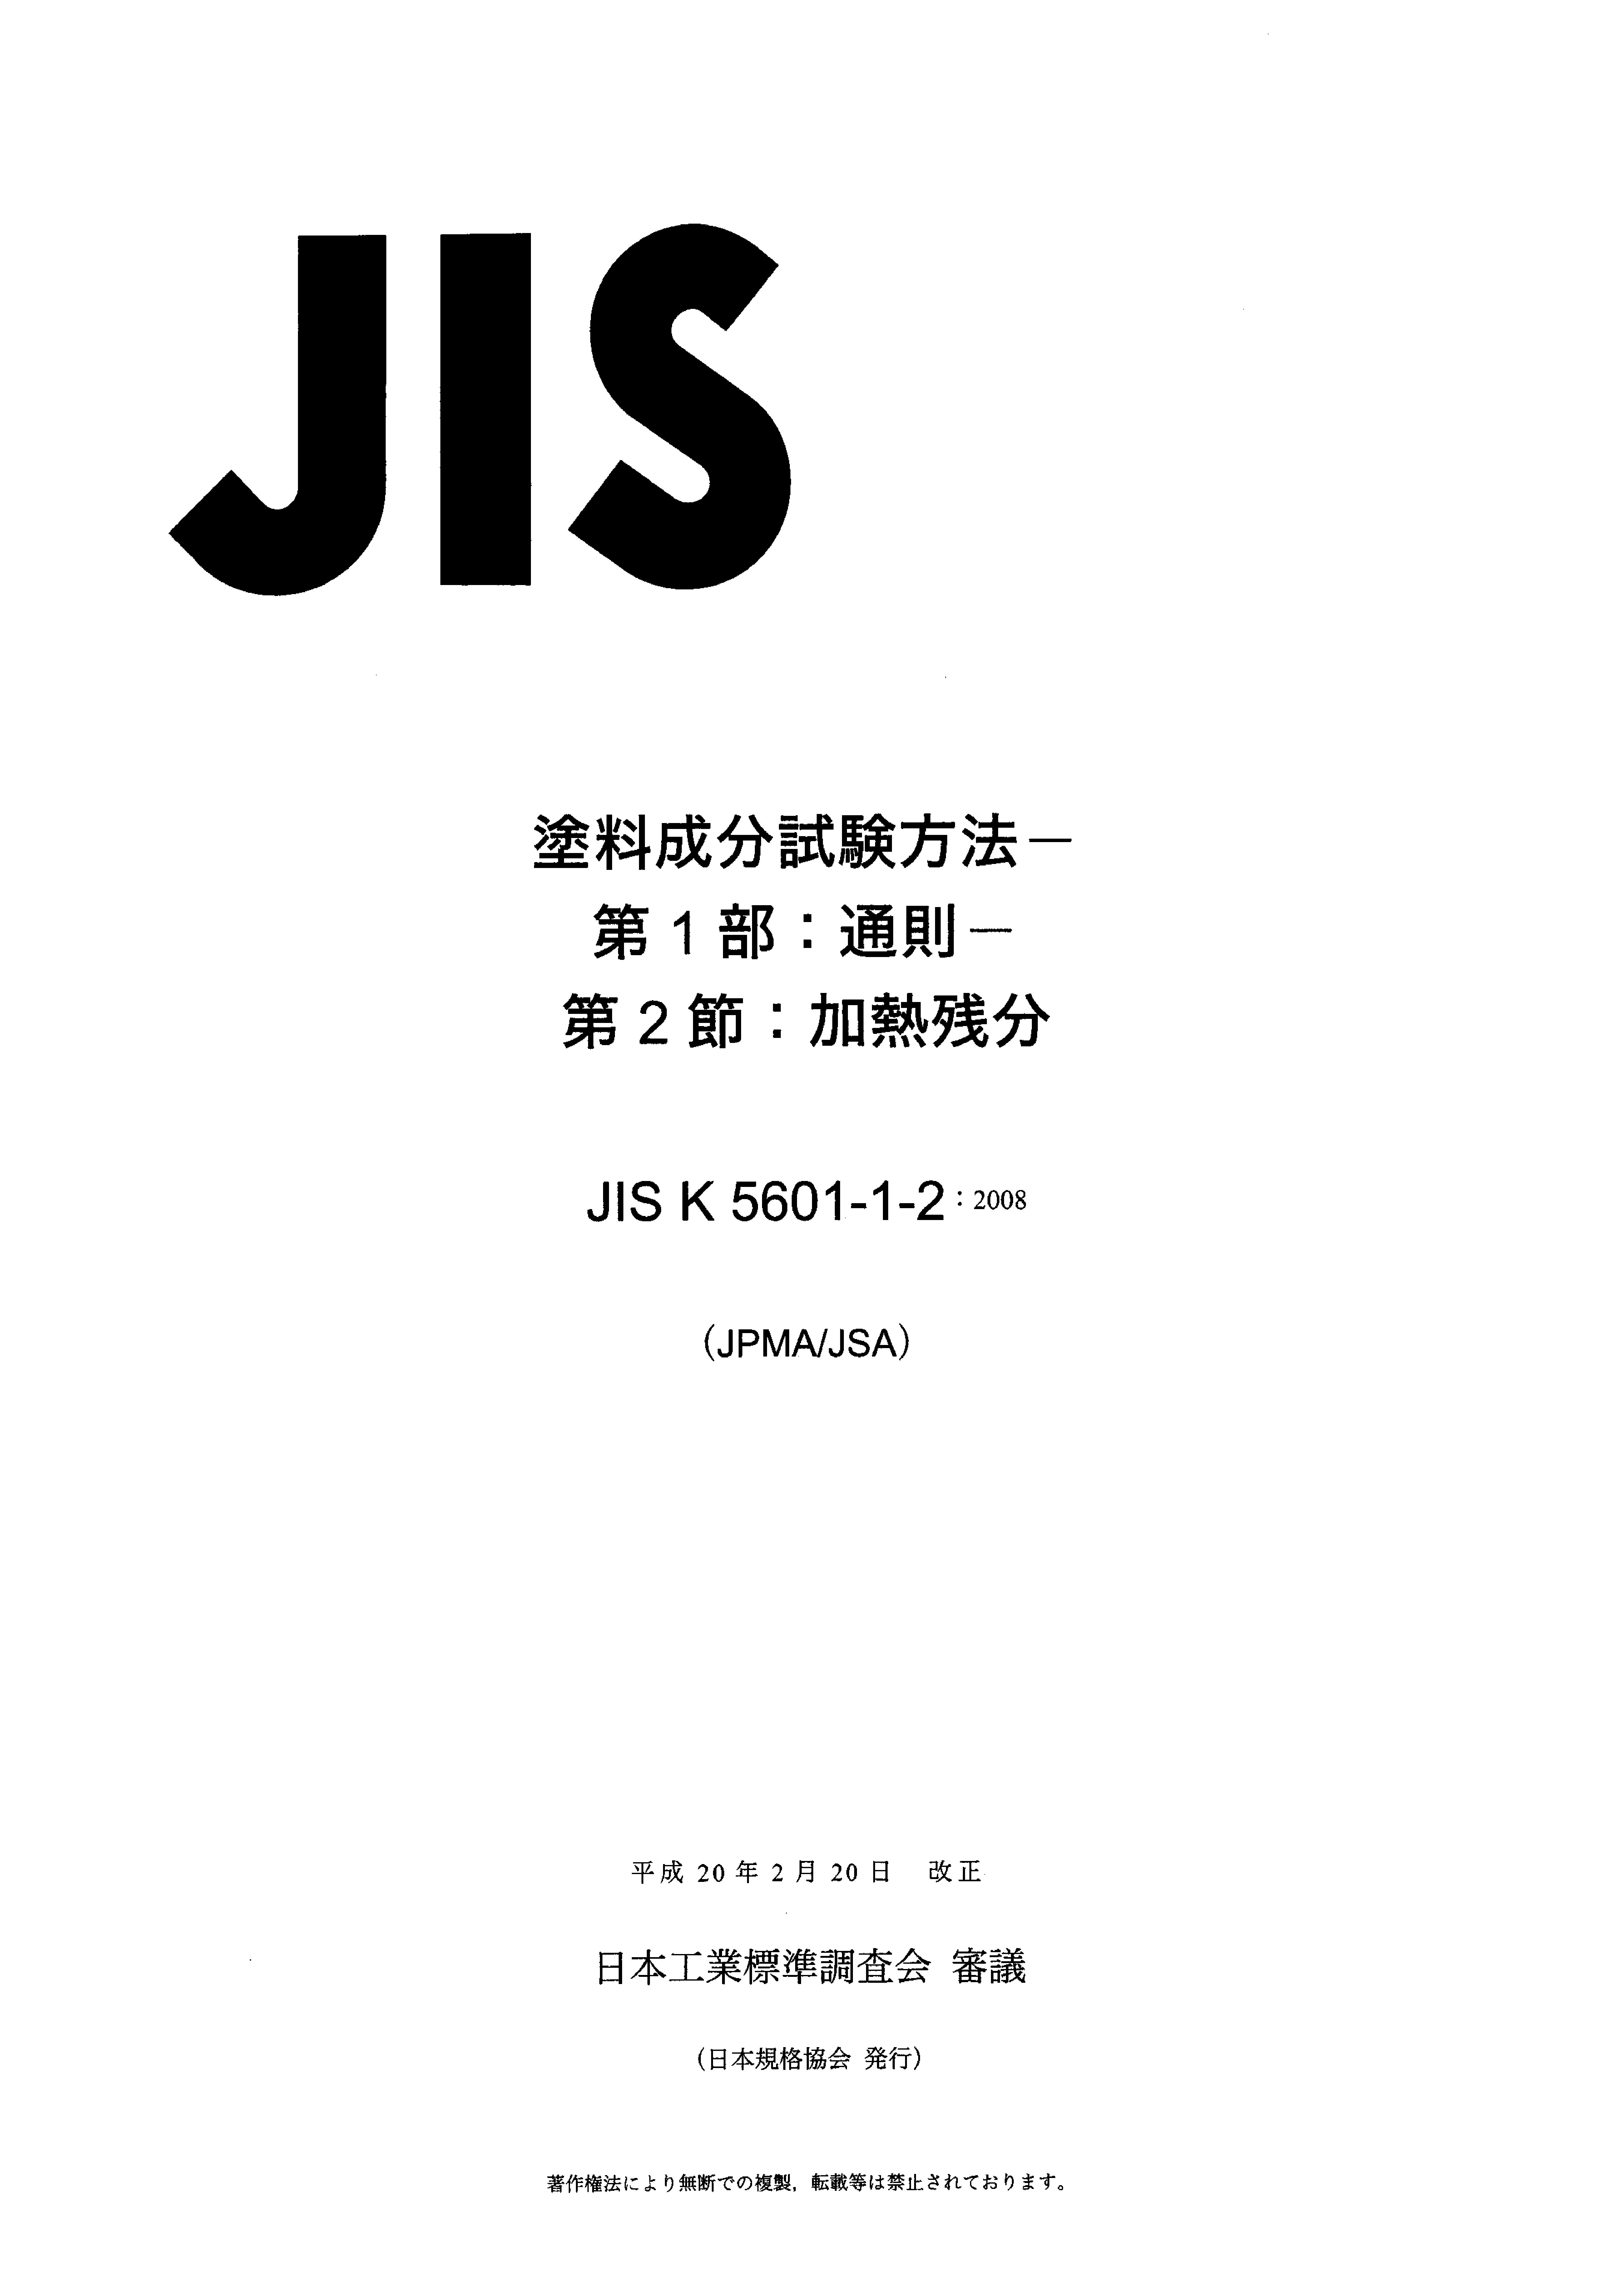 JIS K 5601-1-2:2008封面图